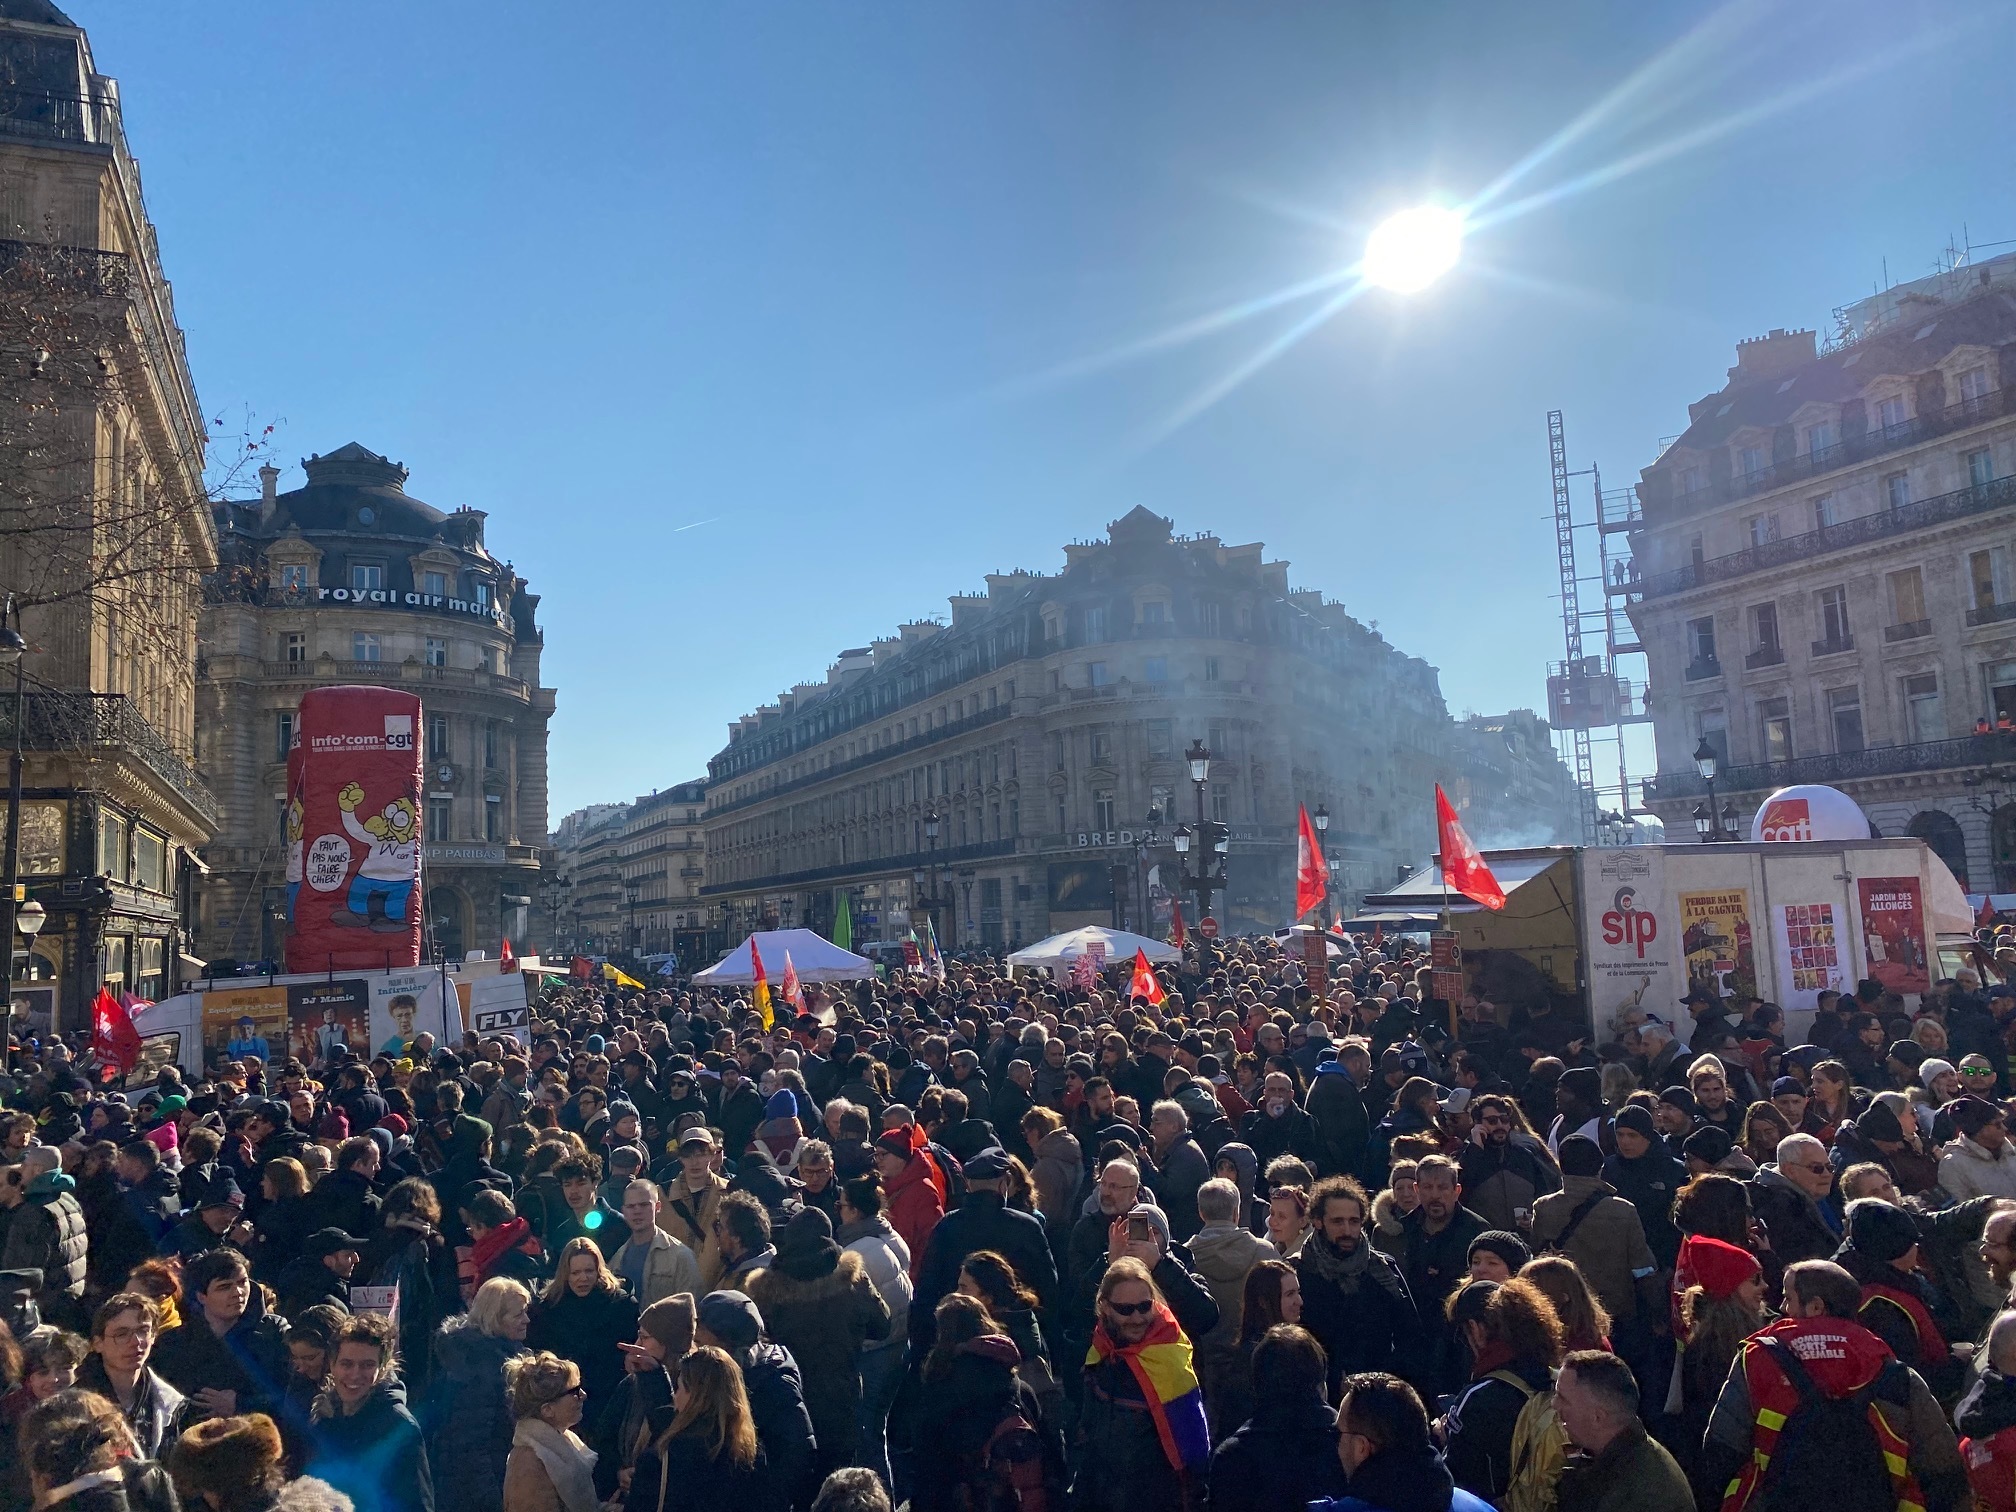 La calle da una tregua a Macron: Decae la protesta contra su polémica reforma de las pensiones